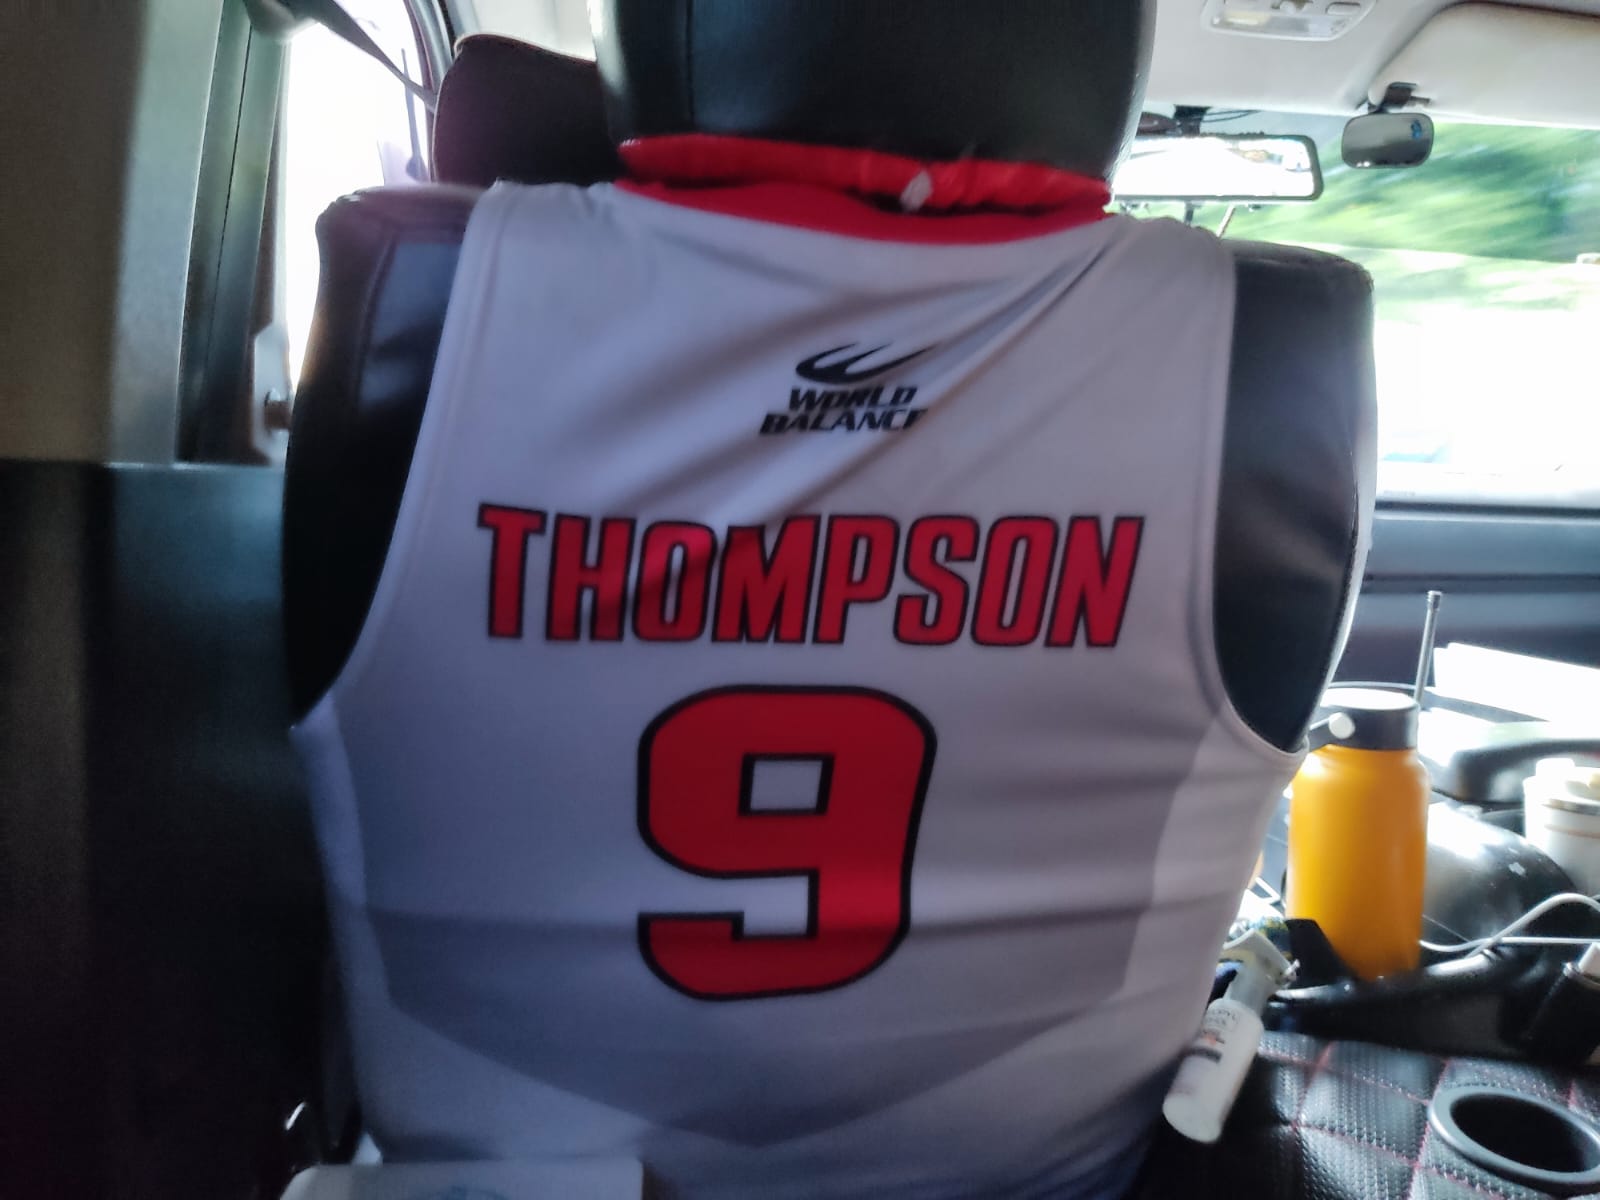 הגופייה של סקוטי תומפסון, כוכב נבחרת הפיליפינים בכדורסל, על כיסא נהג המונית במנילה (צילום: אורן לב ארי)